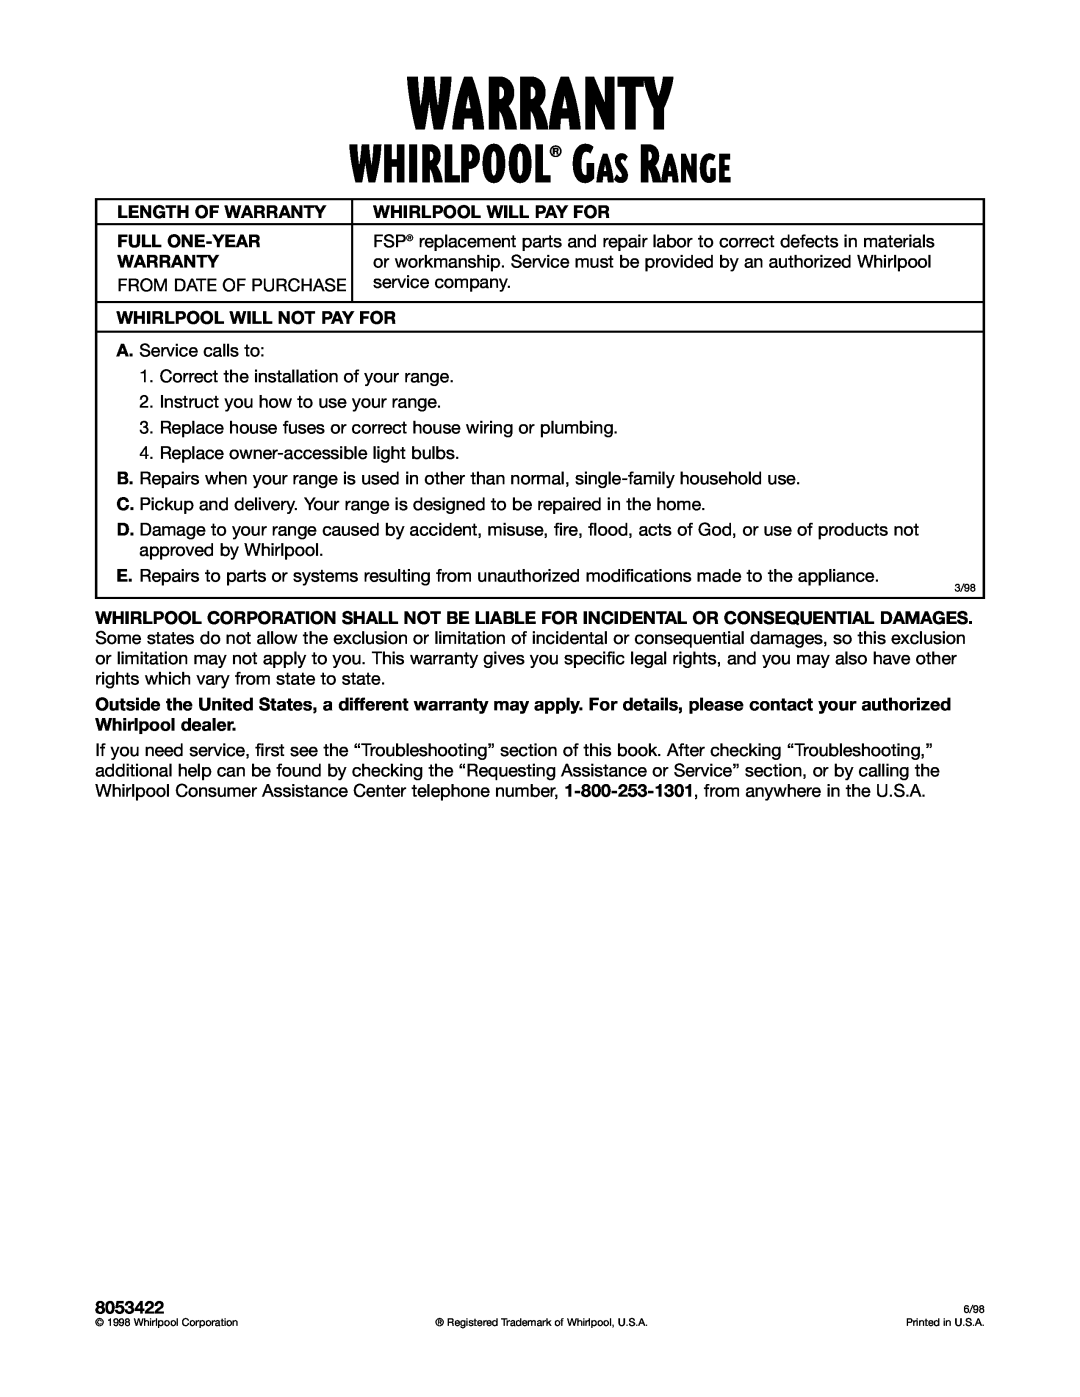 Whirlpool SF362BEG warranty Warranty, Whirlpool Gas Range 